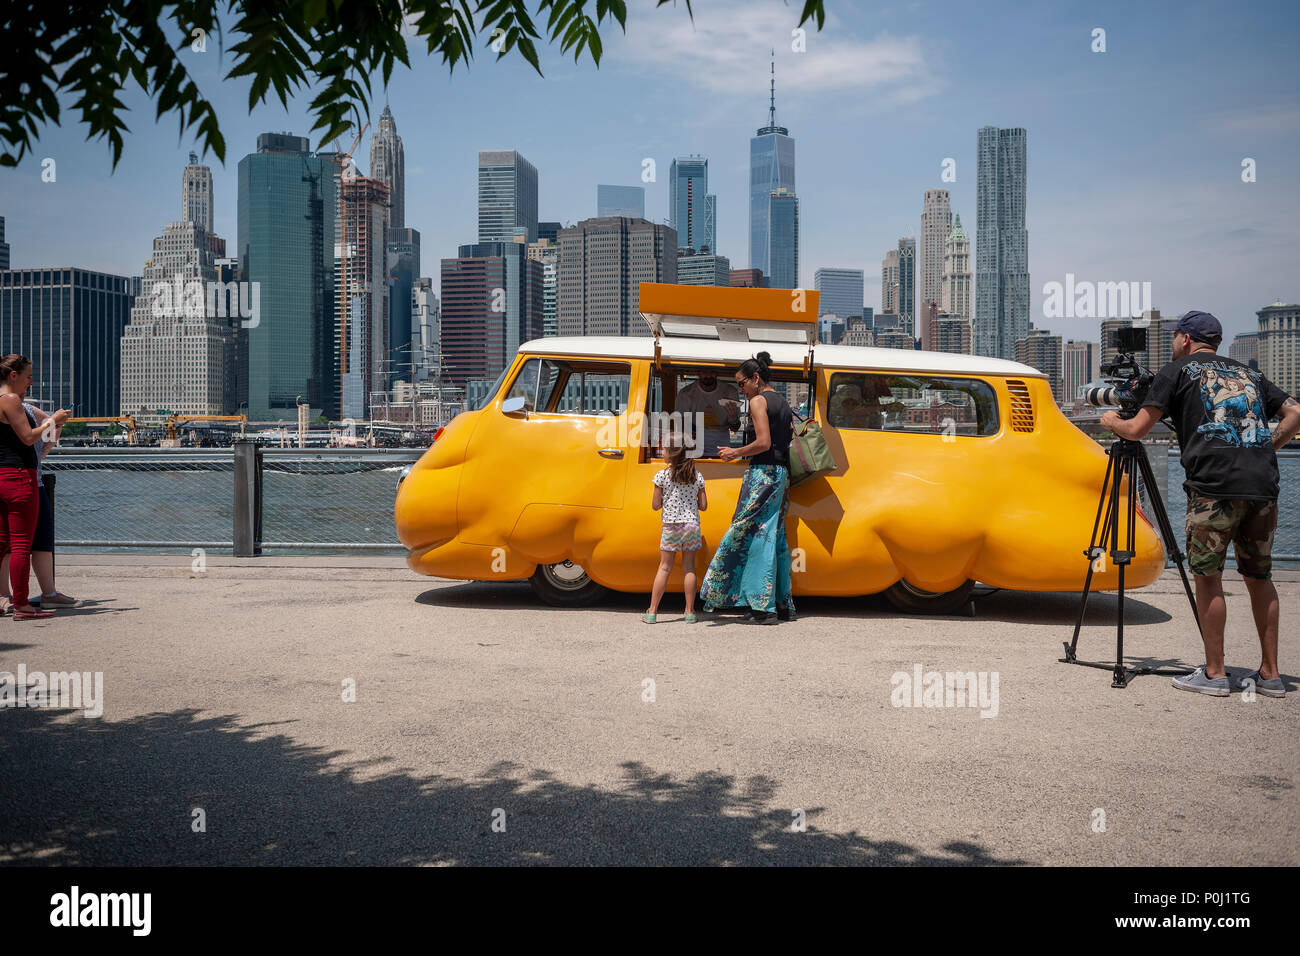 Brooklyn, Etats-Unis. 9 juin 2018. Avec le ciel de New York derrière eux les visiteurs au parc Du Pont de Brooklyn à New York delight dans artiste Erwin Wurm's 'Hot Dog' de bus desservant gratuitement des hot-dogs à toute et tous, vu le jour de l'ouverture, samedi, Juin 9, 2018. L'artiste autrichien modifié un vintage Volkswagen Microbus dans un camion alimentaire jaune vif à bulbe, redéfinir la dichotomie entre commerce et la sculpture, bien qu'emblématique, où vous profiterez gratuitement de l'alimentation de rue de New York. Le chariot était auparavant le 'BUS' Curry wursts servant en Europe. Crédit : Richard Levine/Alamy Live News Banque D'Images